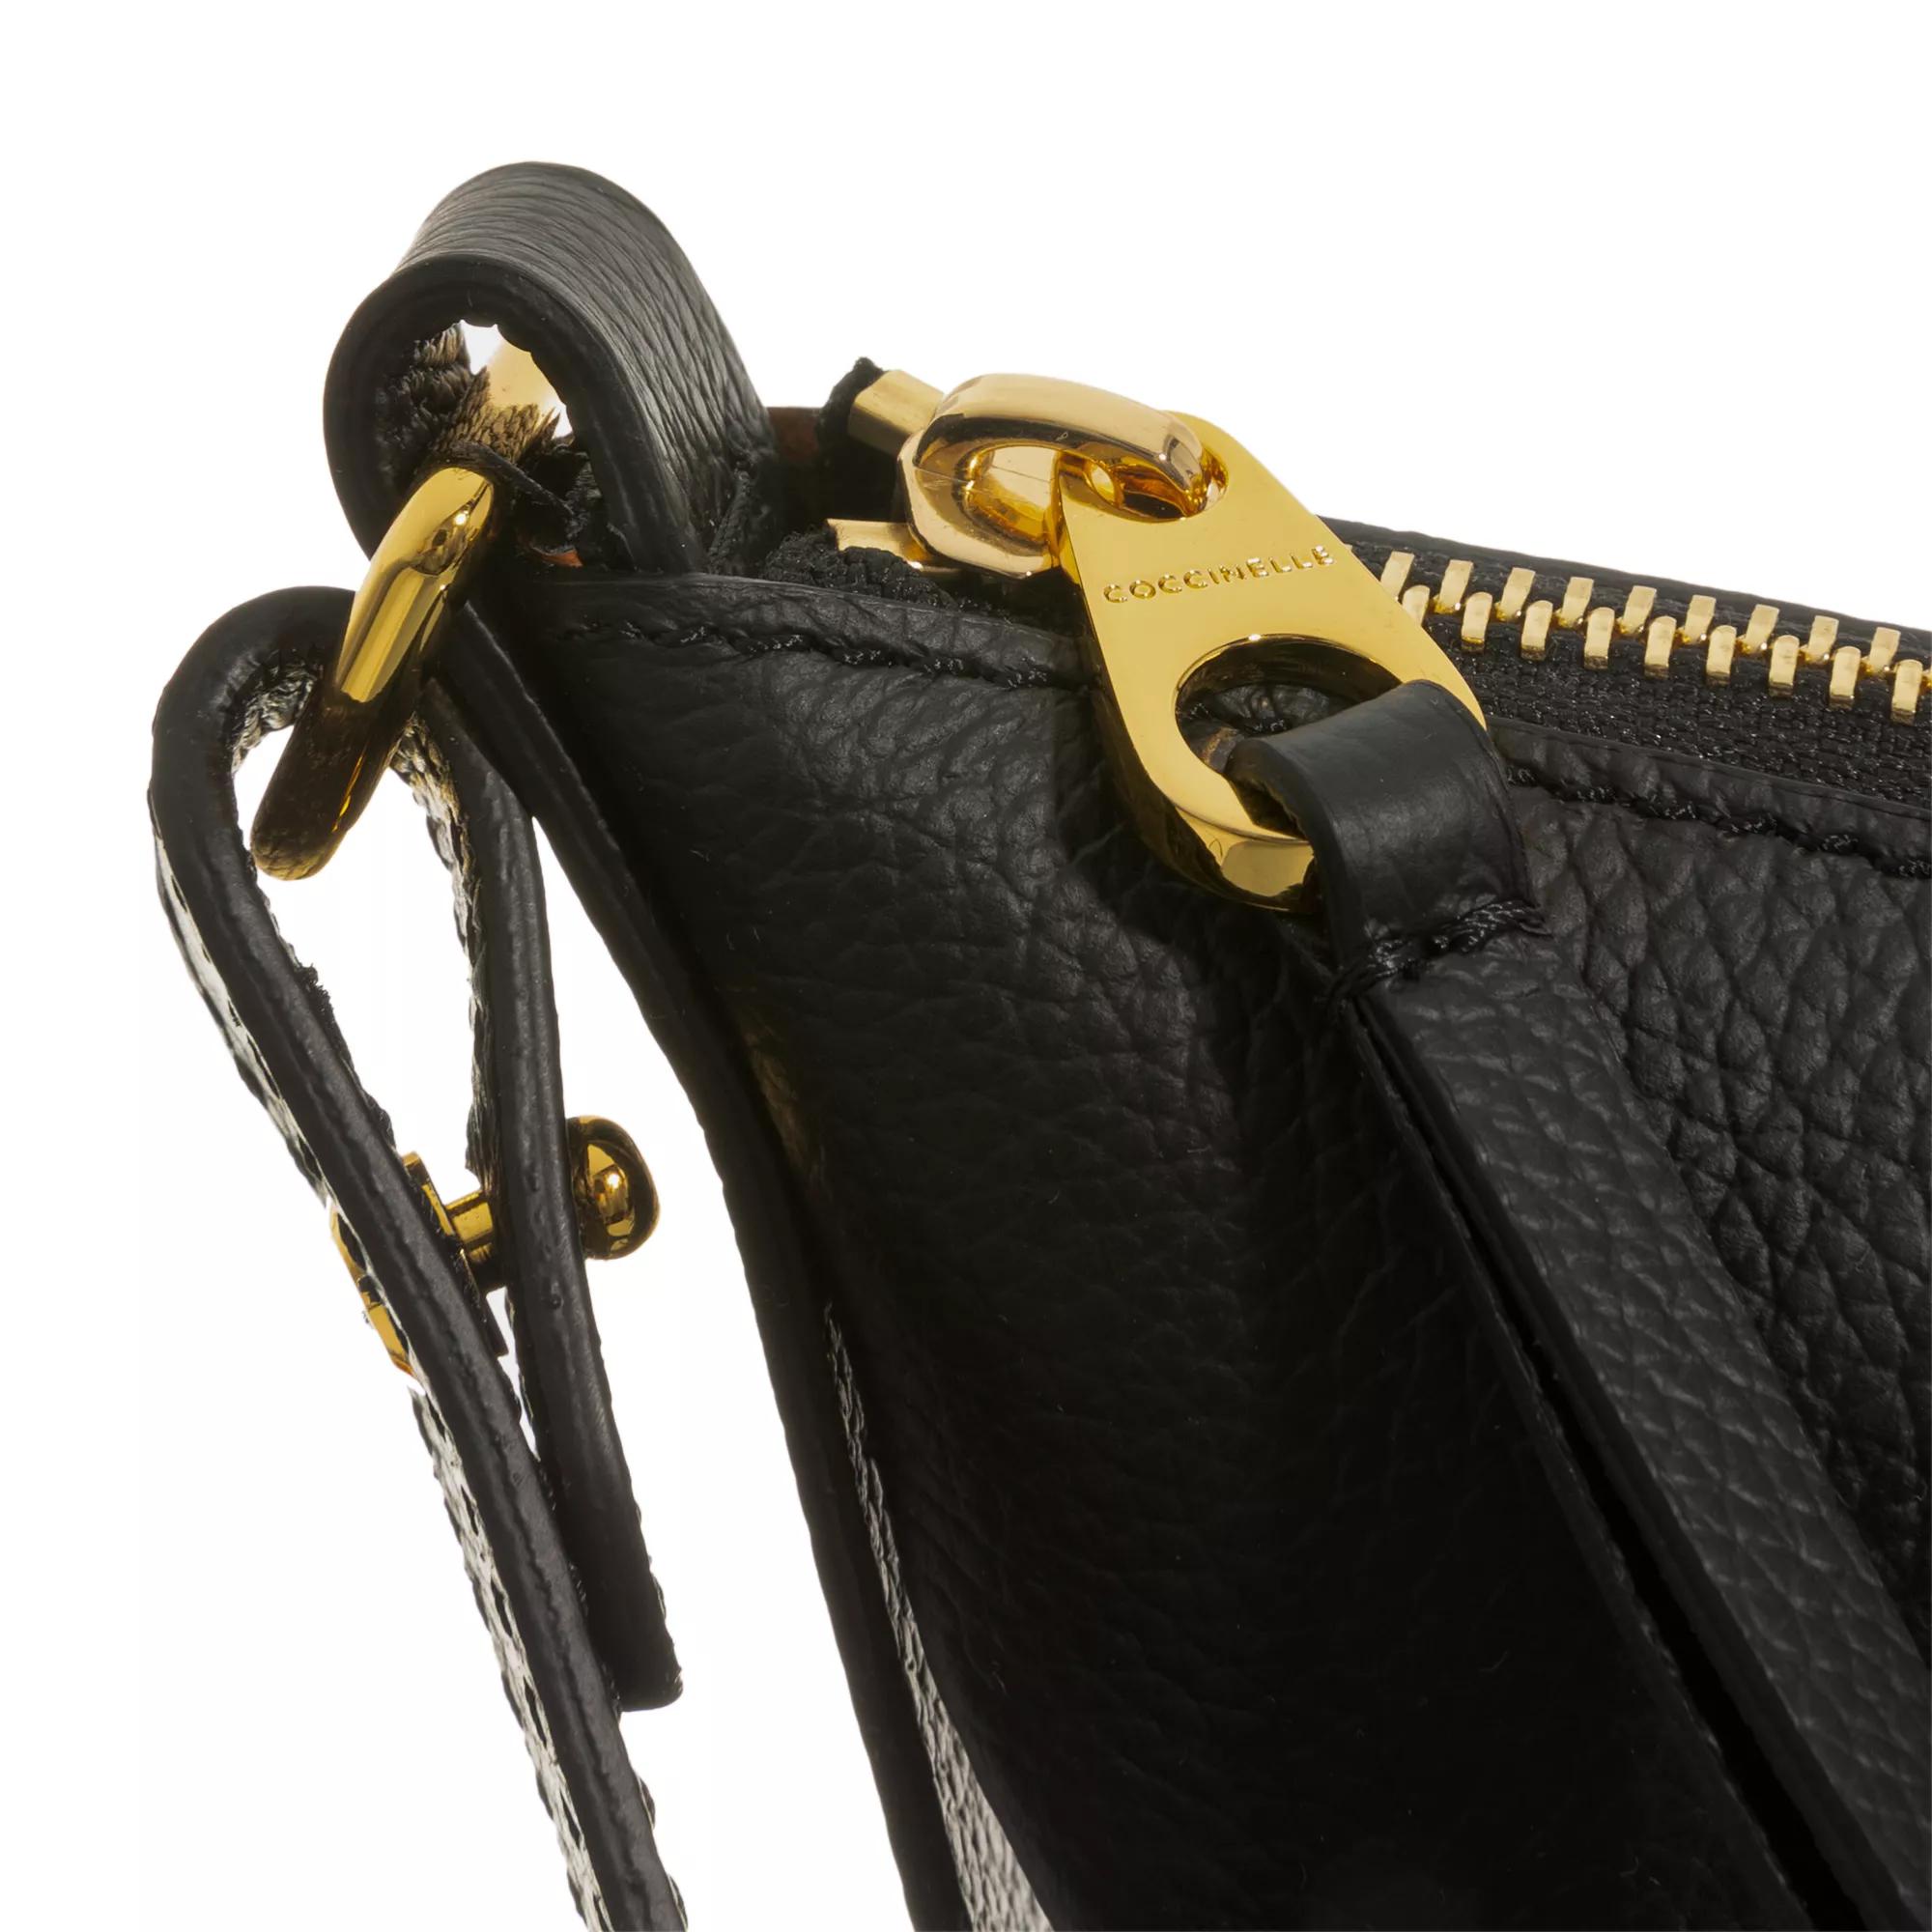 Coccinelle Crossbody bags Snuggie Handbag in zwart